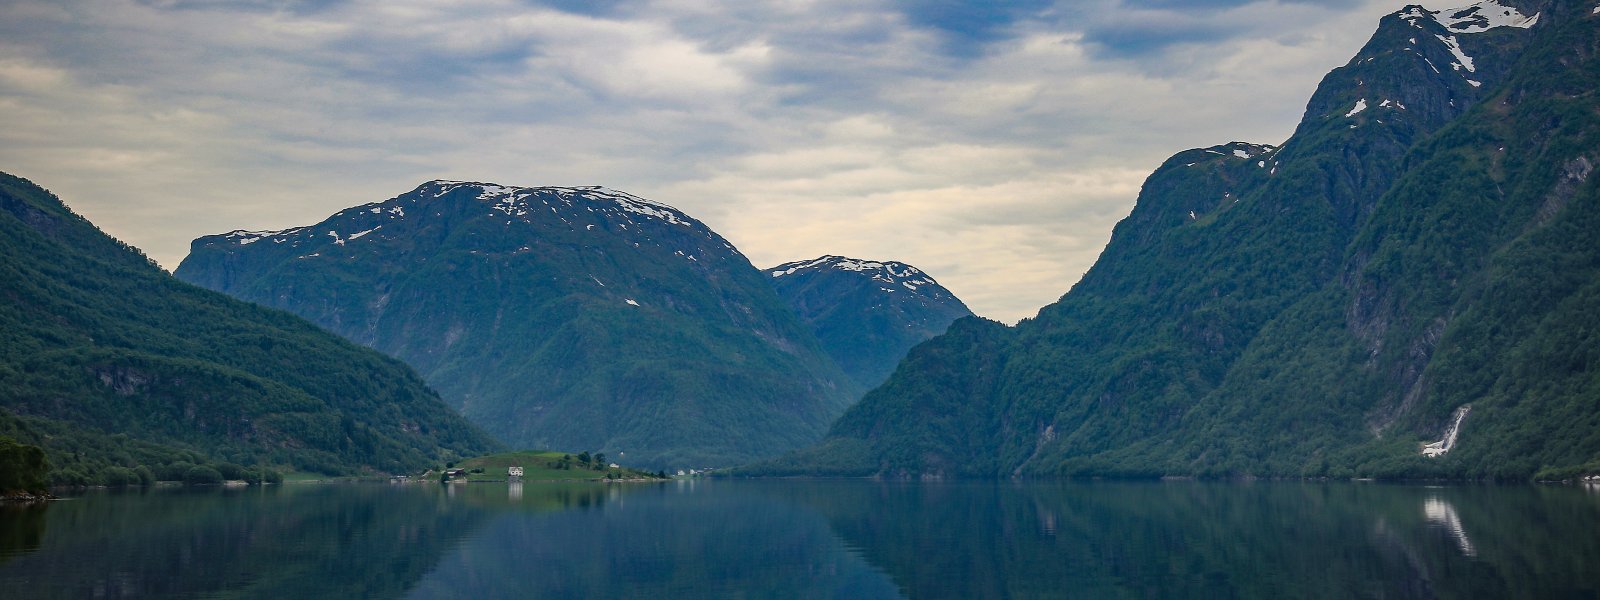 Natur-kulturlandskap-fjord-fjell-Gloppen-40771320550_627e3736e3_o